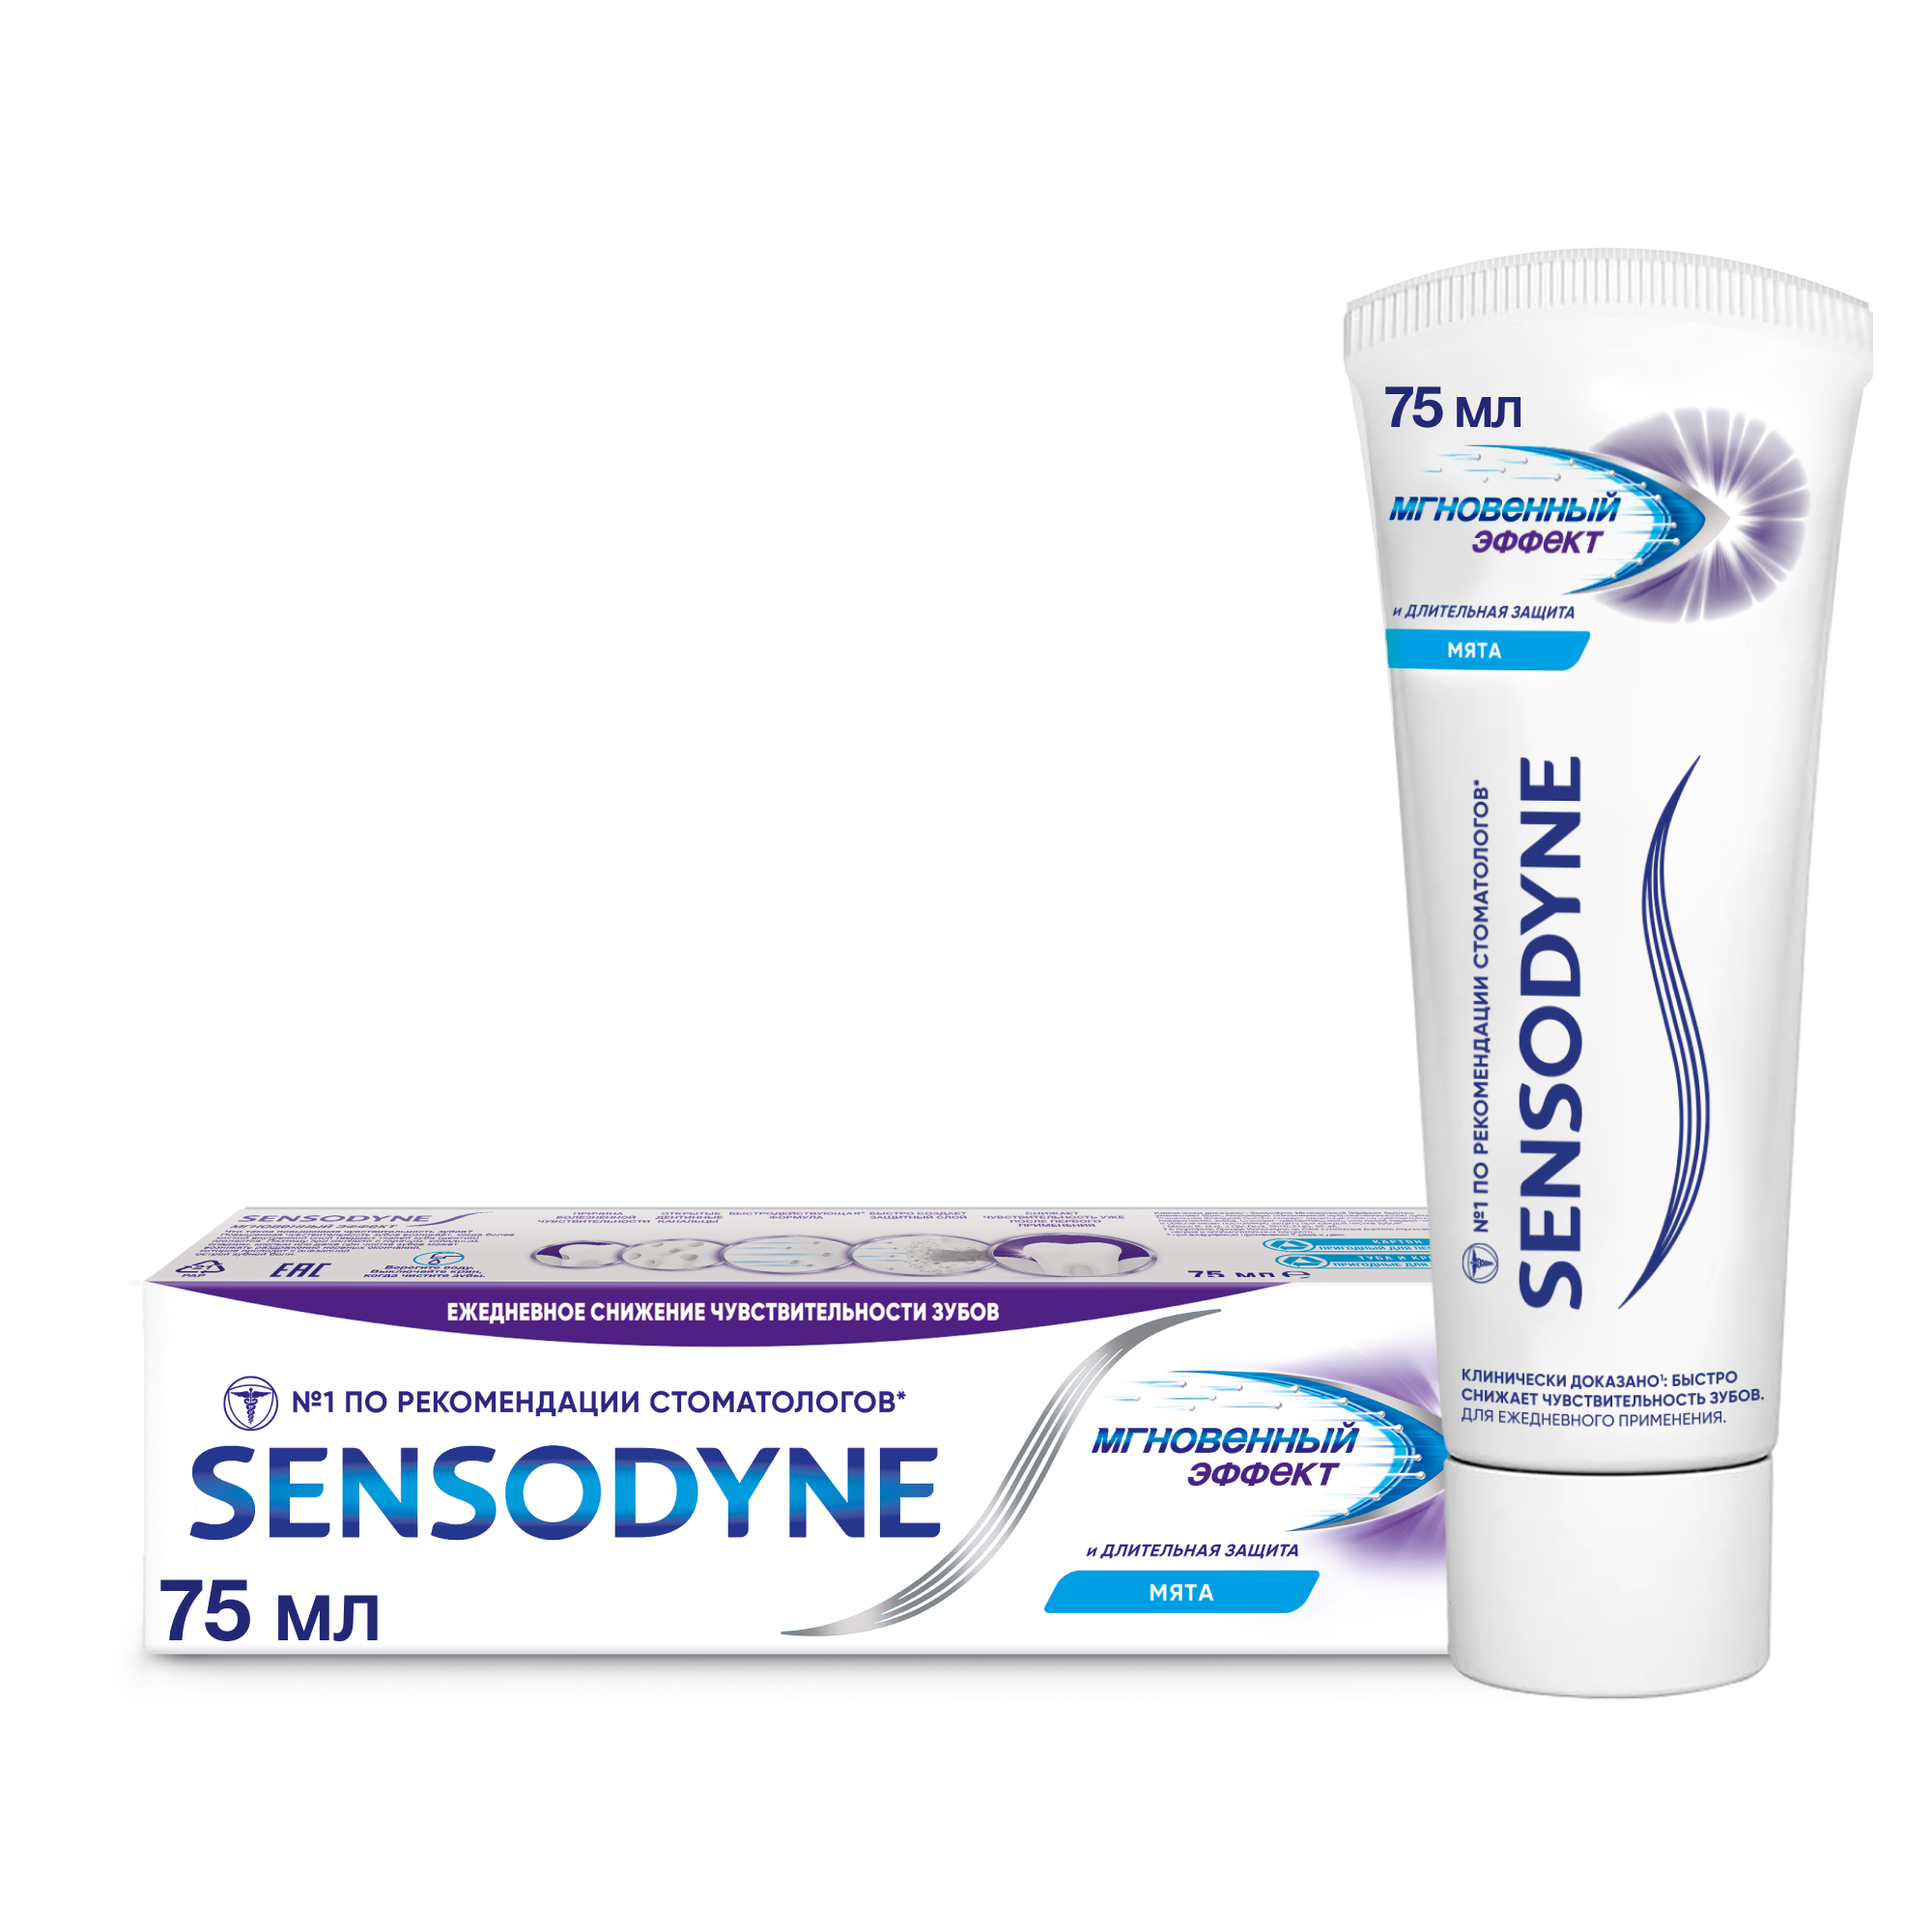 Зубная паста Sensodyne Мгновенный Эффект 75мл зубная паста sensodyne восстановление и защита 75 мл